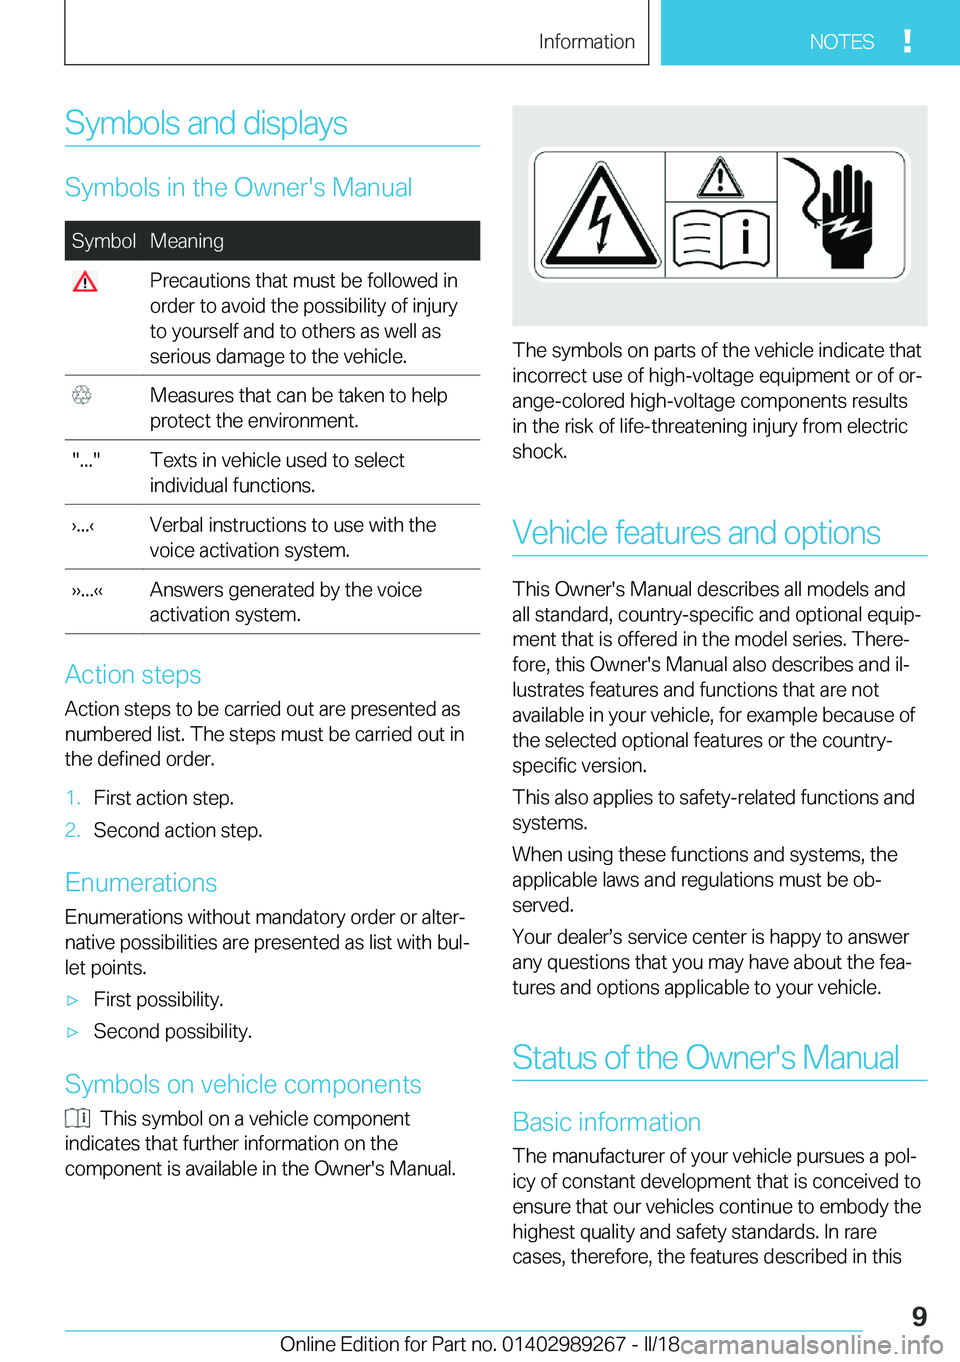 BMW I3 2018  Owners Manual �S�y�m�b�o�l�s� �a�n�d� �d�i�s�p�l�a�y�s
�S�y�m�b�o�l�s� �i�n� �t�h�e� �O�w�n�e�r�'�s� �M�a�n�u�a�l
�S�y�m�b�o�l�M�e�a�n�i�n�g� �P�r�e�c�a�u�t�i�o�n�s� �t�h�a�t� �m�u�s�t� �b�e� �f�o�l�l�o�w�e�d� 